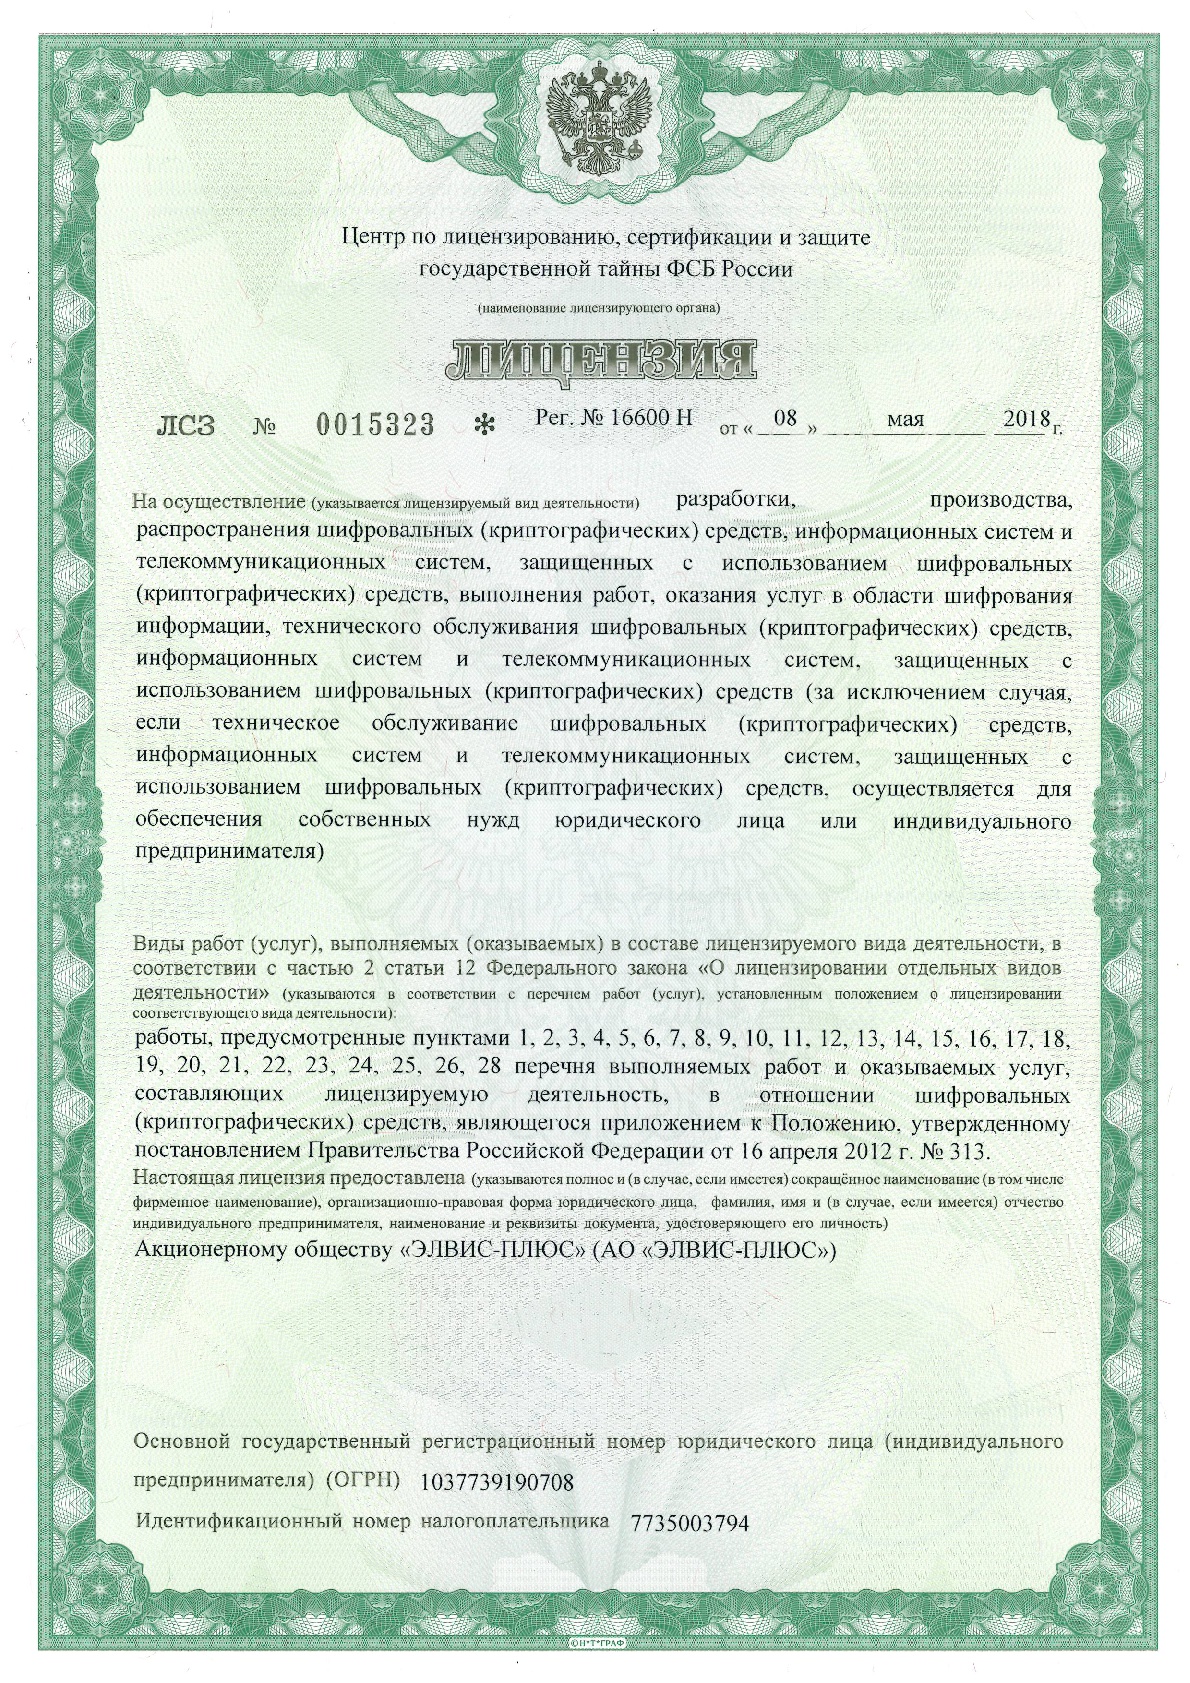 Лицензия ФСБ России № 16600 Н от 08.05.2018 г.